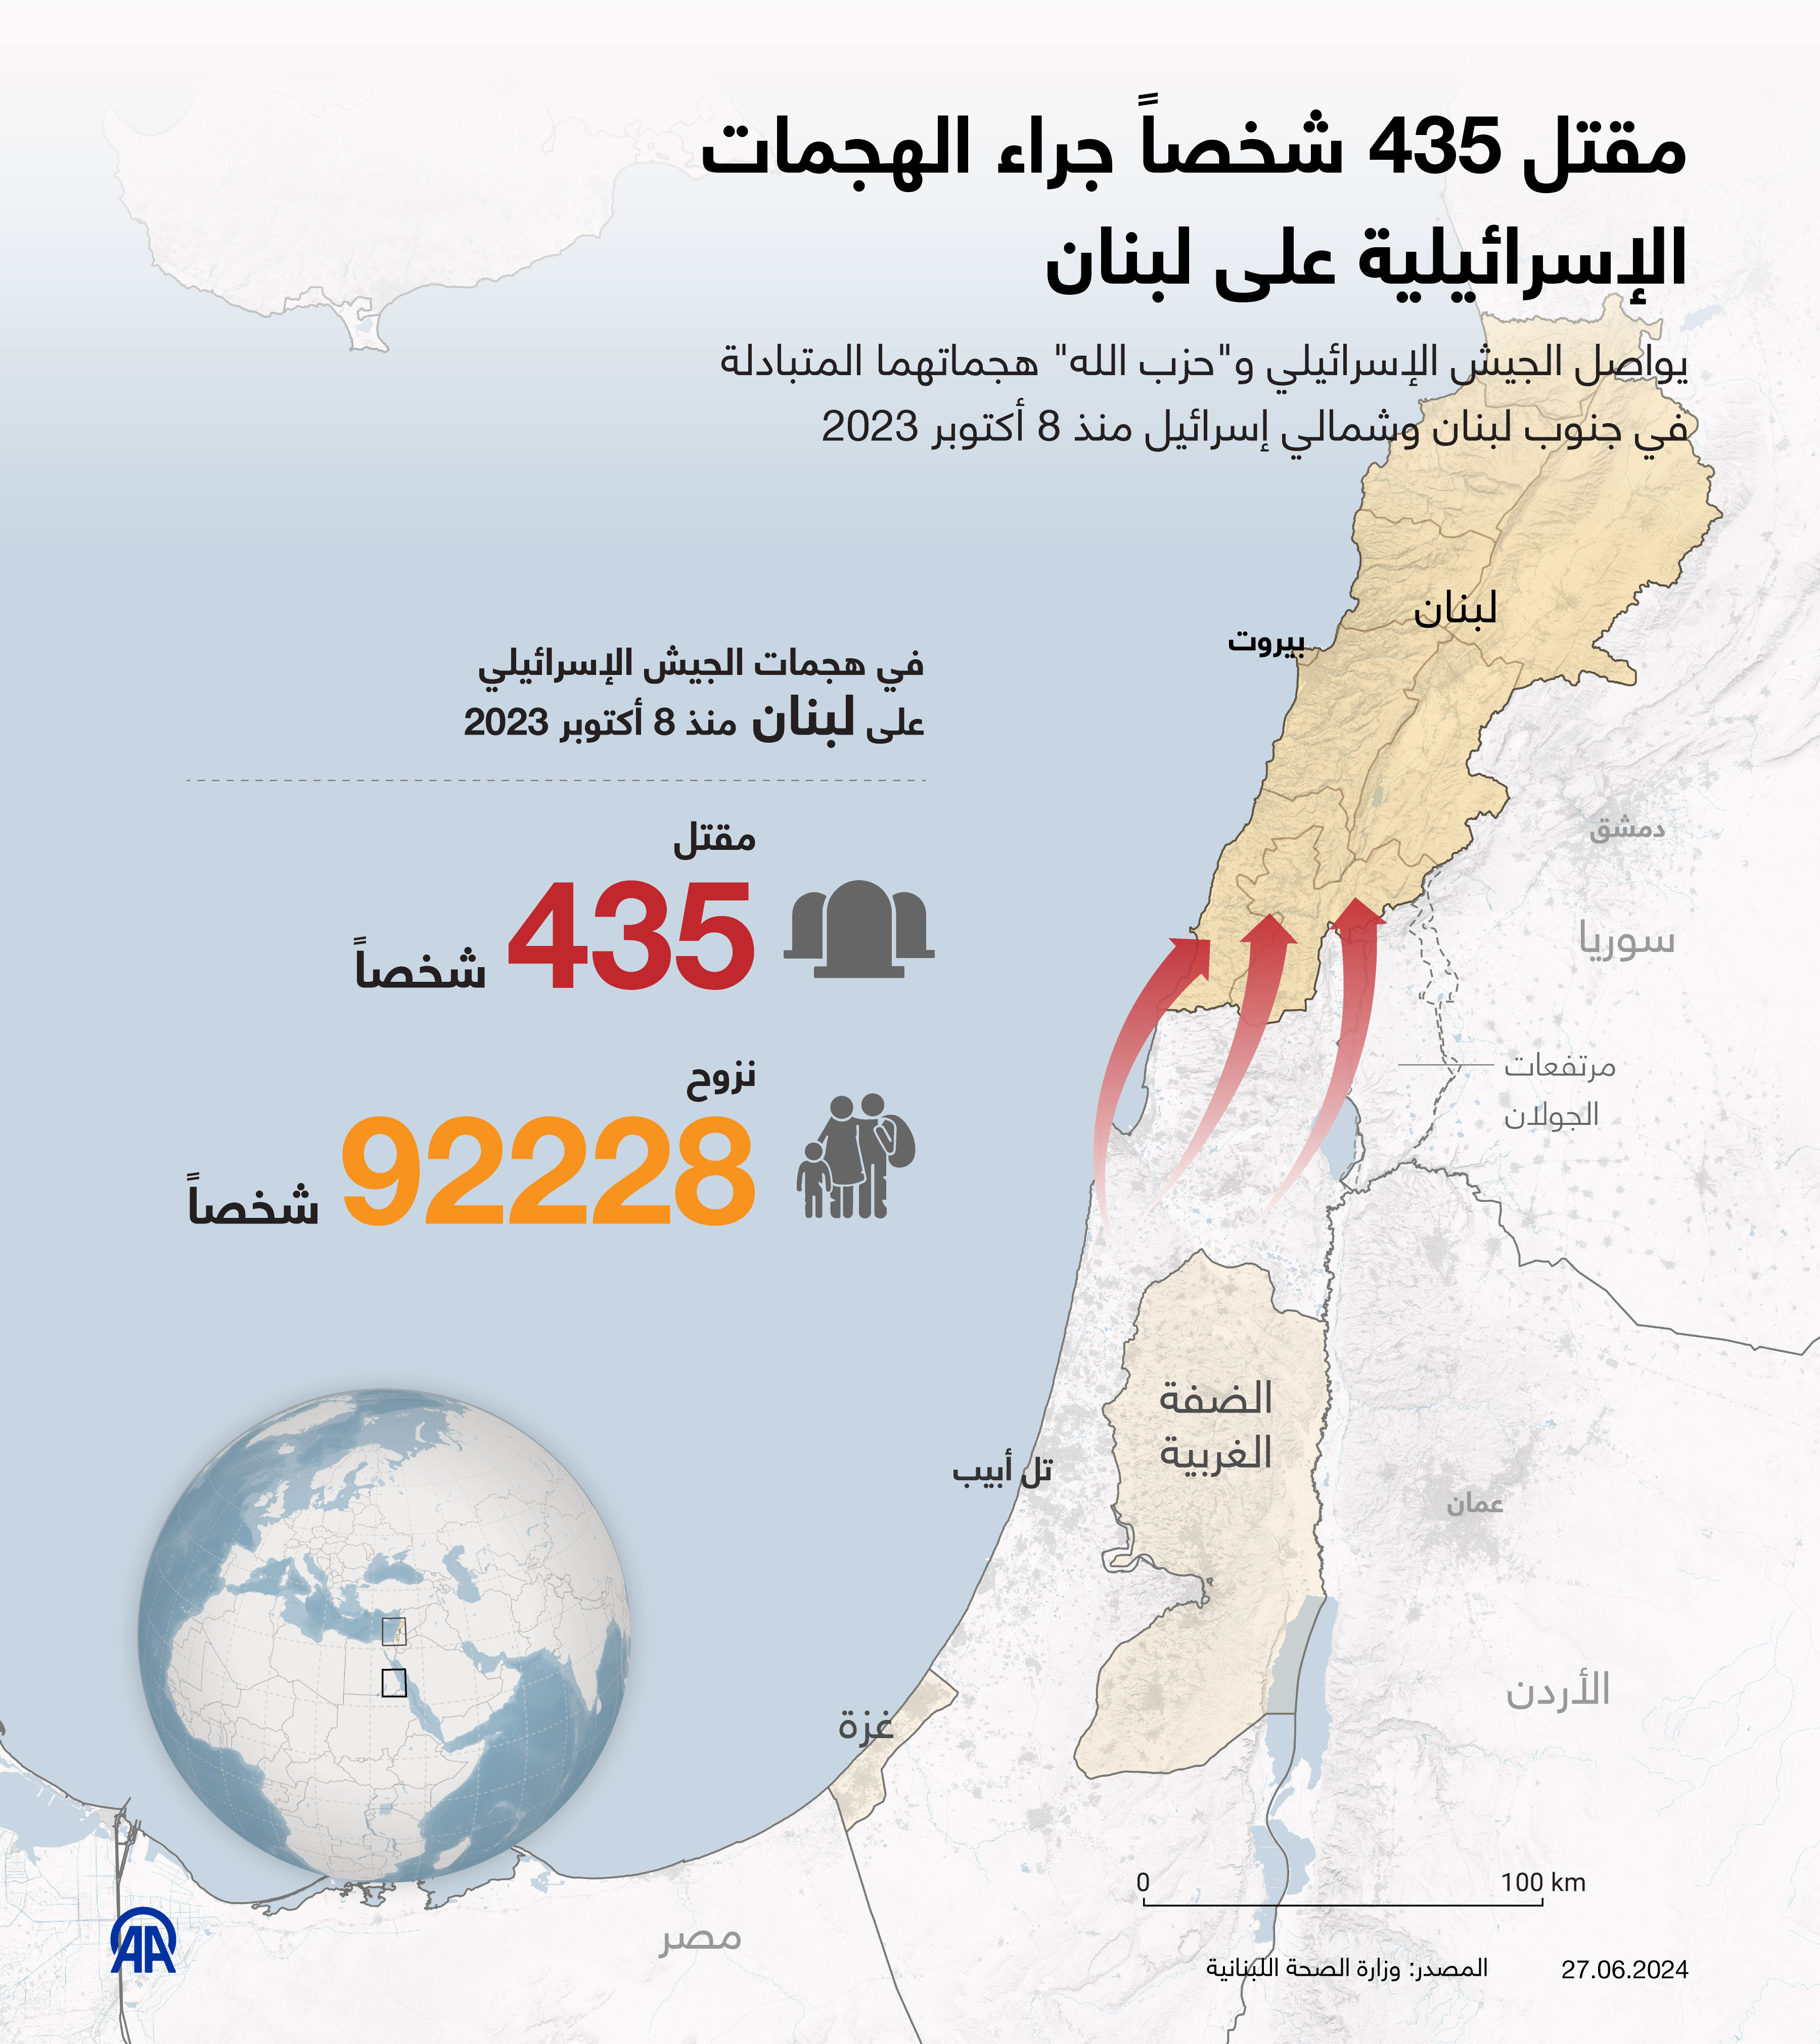 مقتل 435 شخصاً جراء الهجمات الإسرائيلية على لبنان